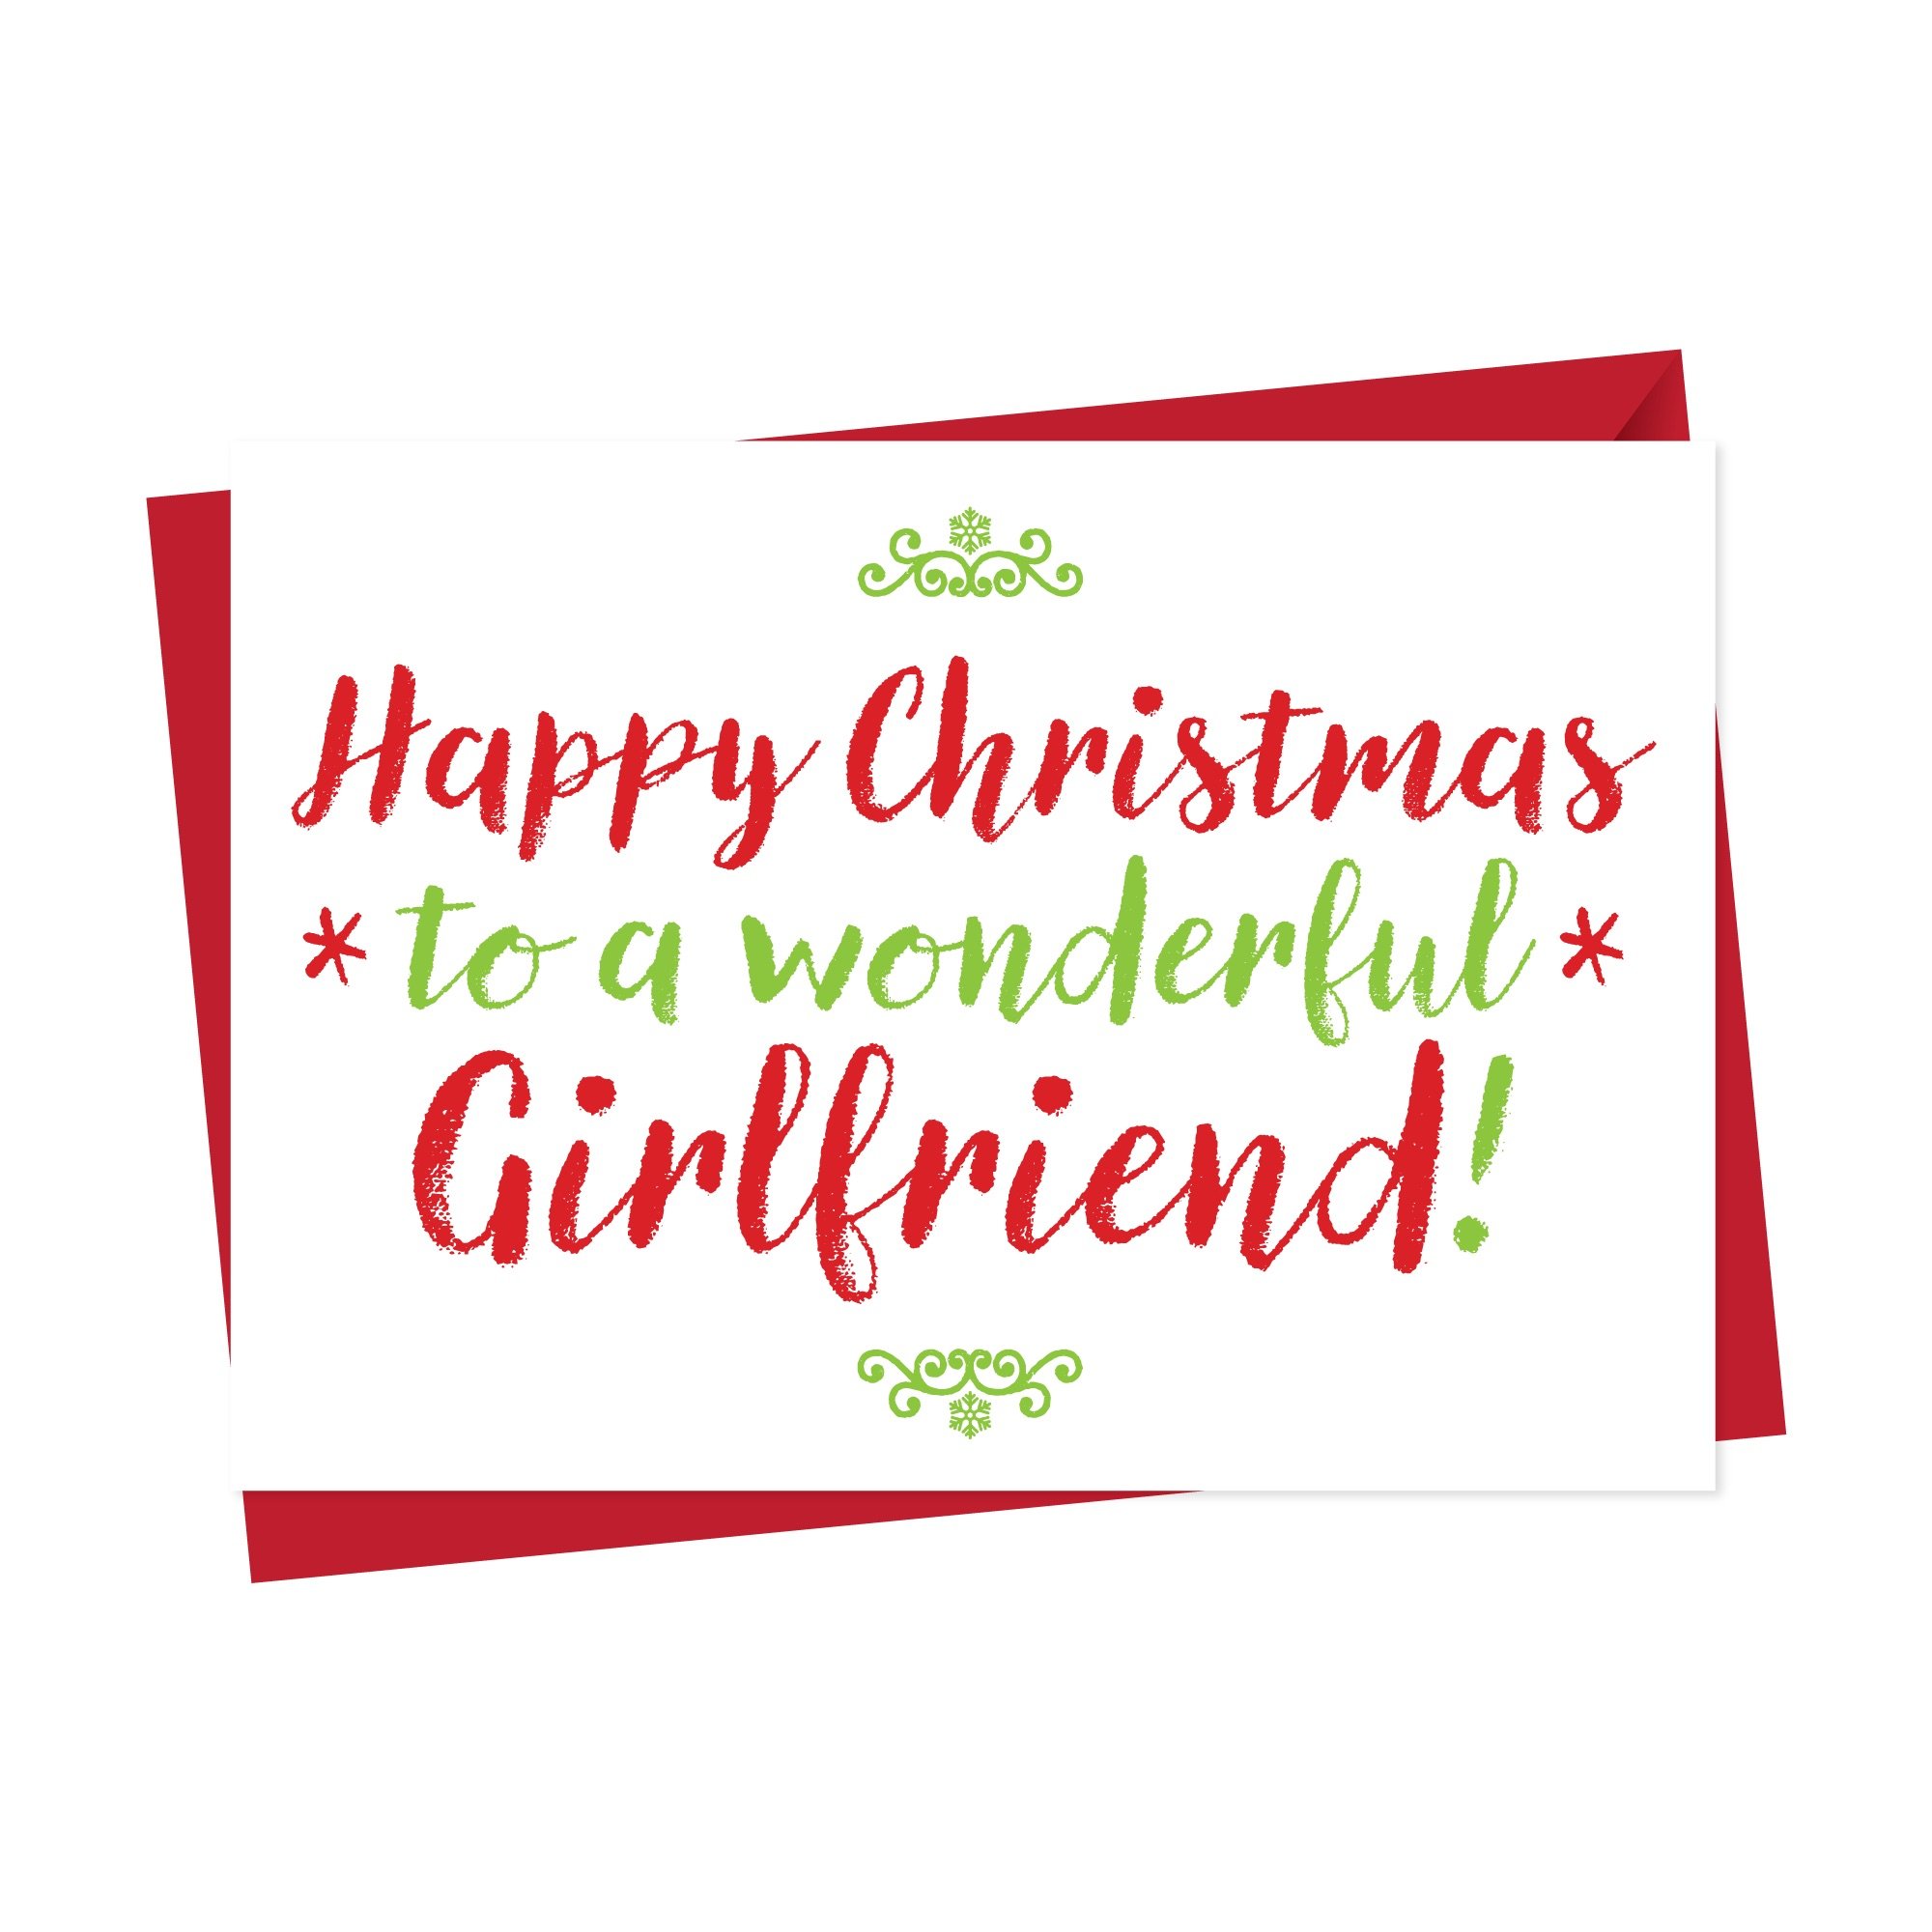 Christmas Card For Wonderful Boyfriend Or Girlfriend